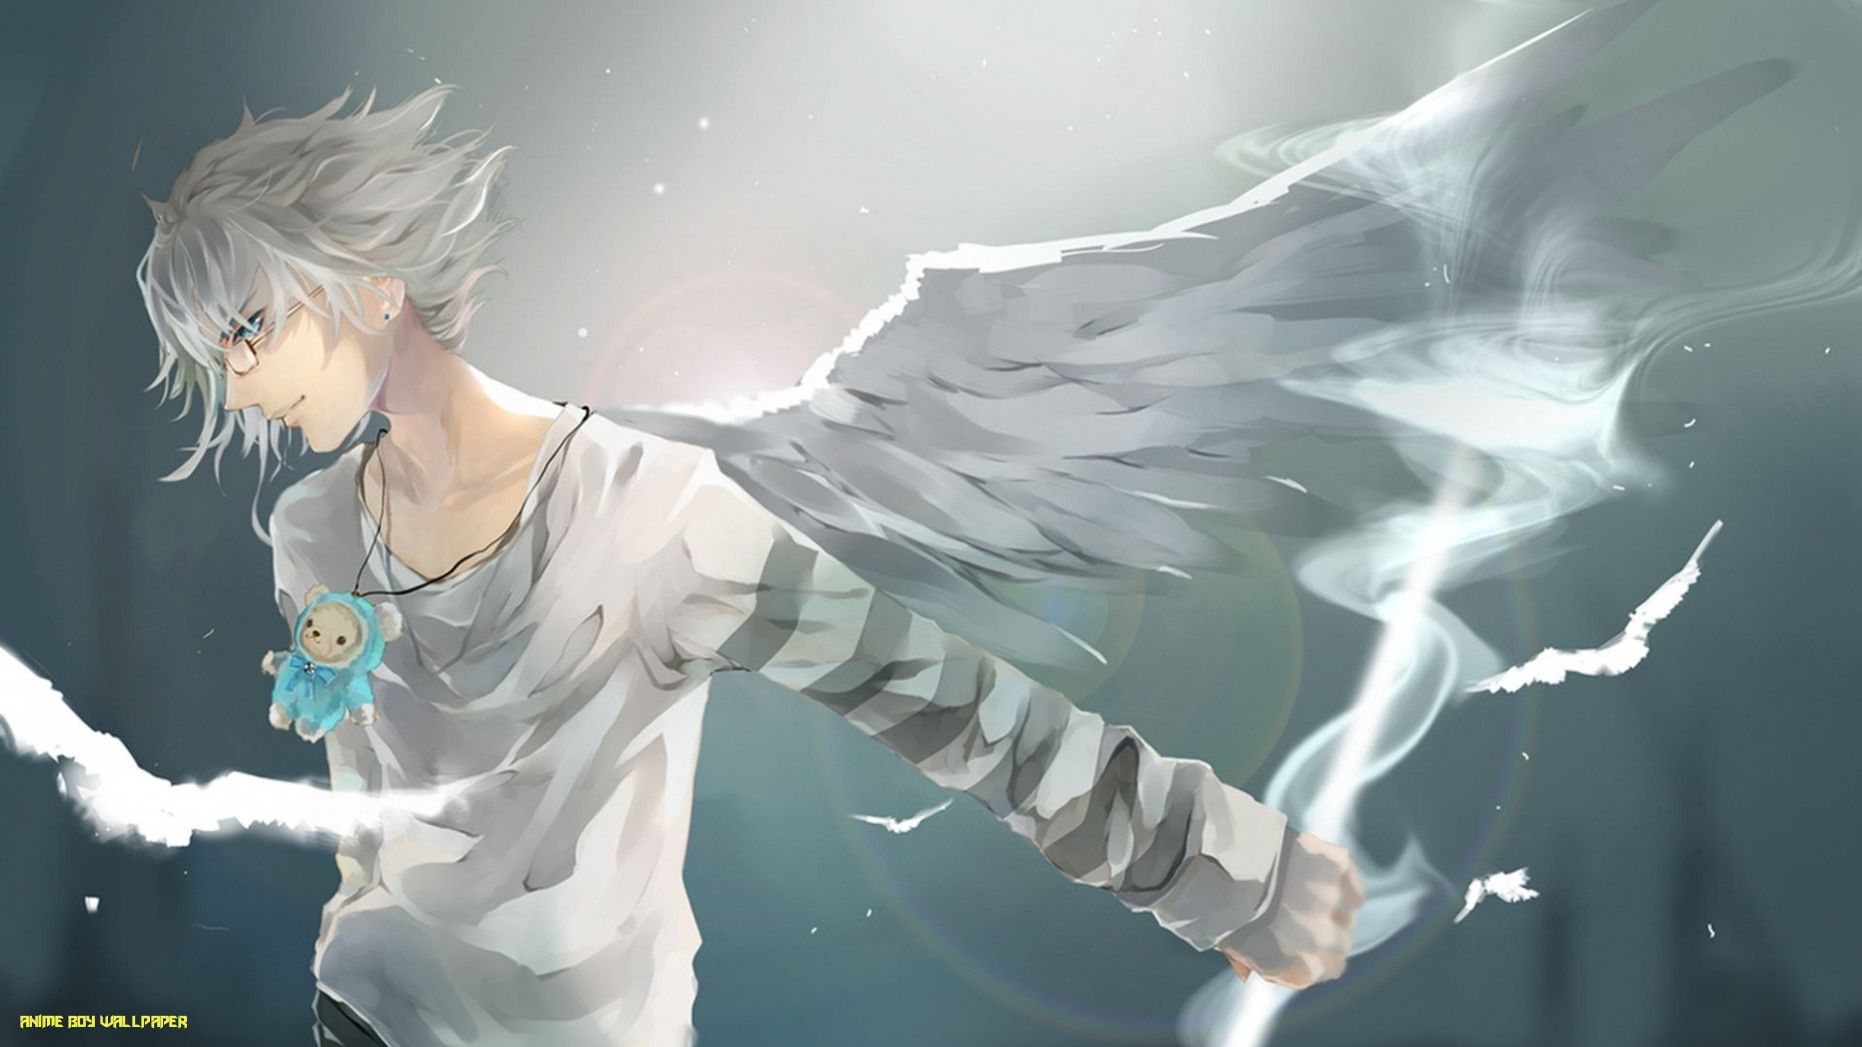 Download Wallpaper 18x18 Anime, Boy, Wings, Art Full HD 18p